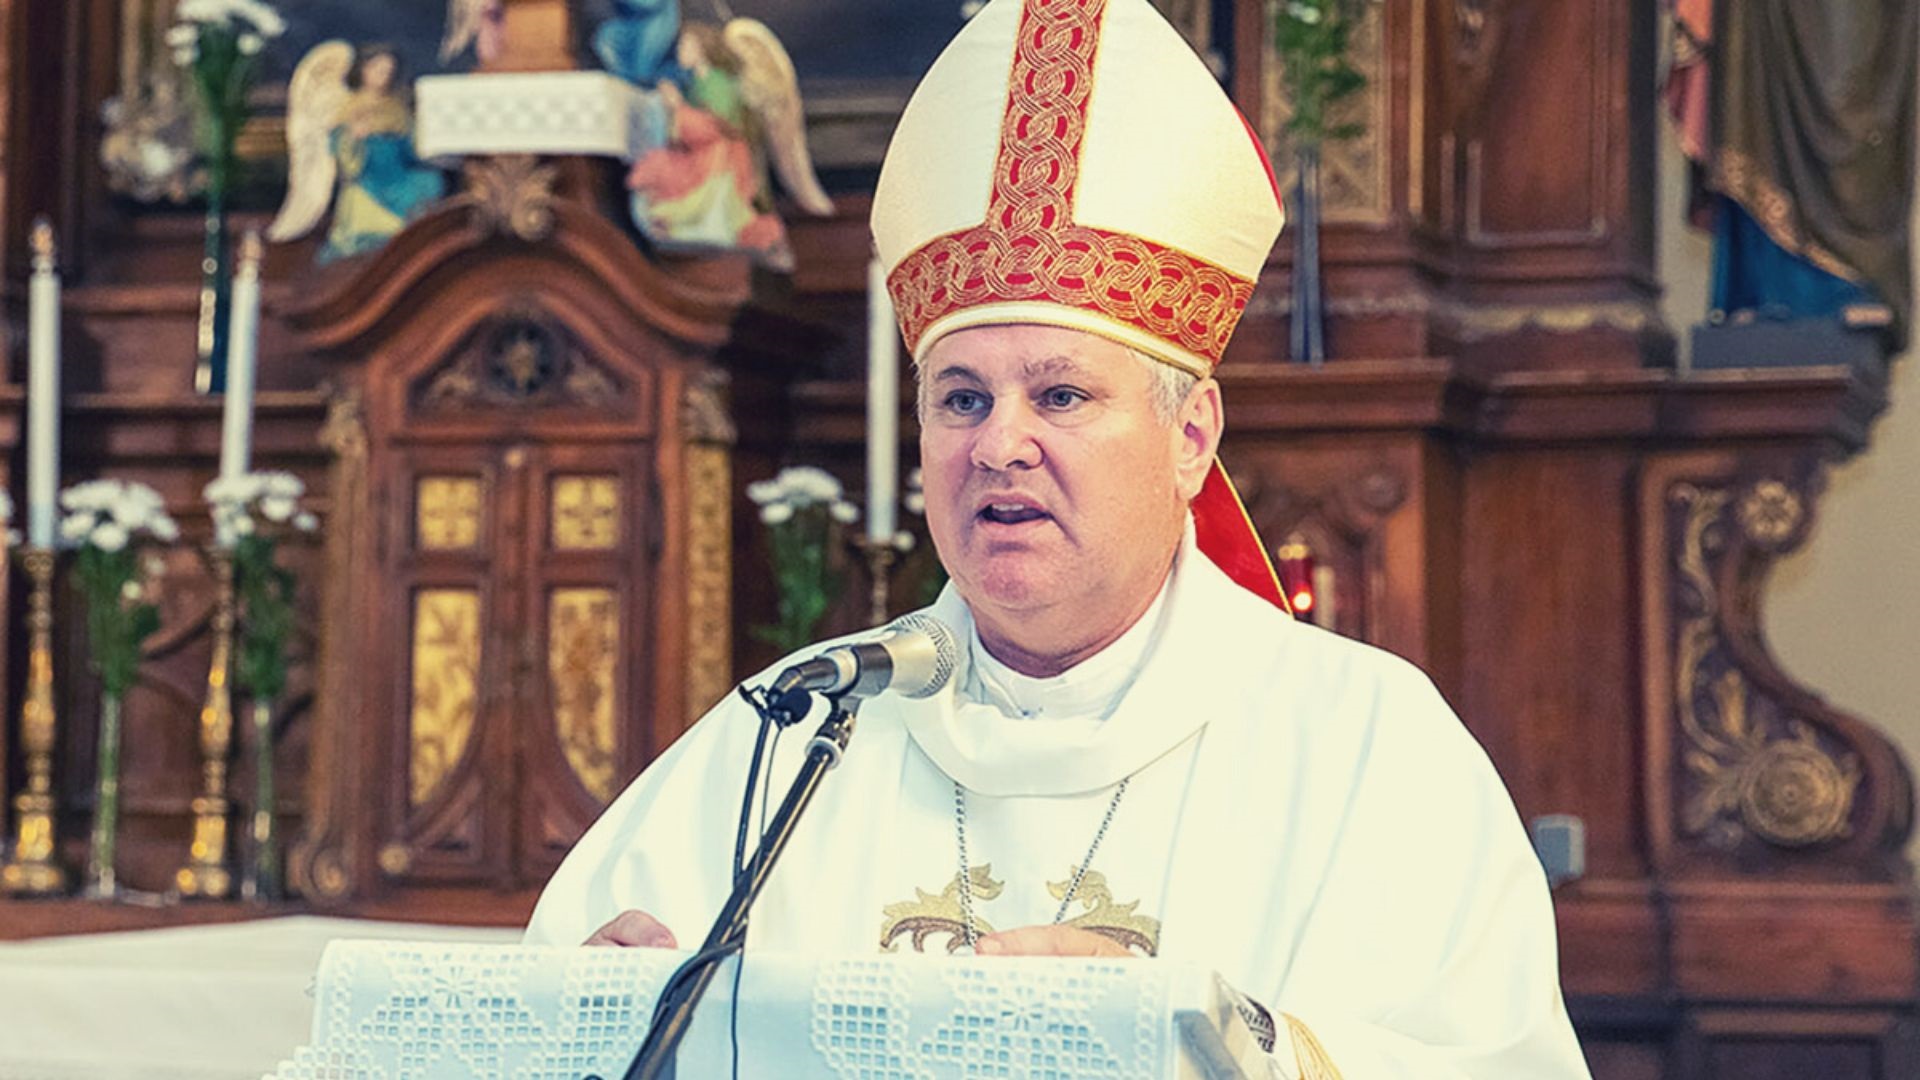 biskup košić naslovna